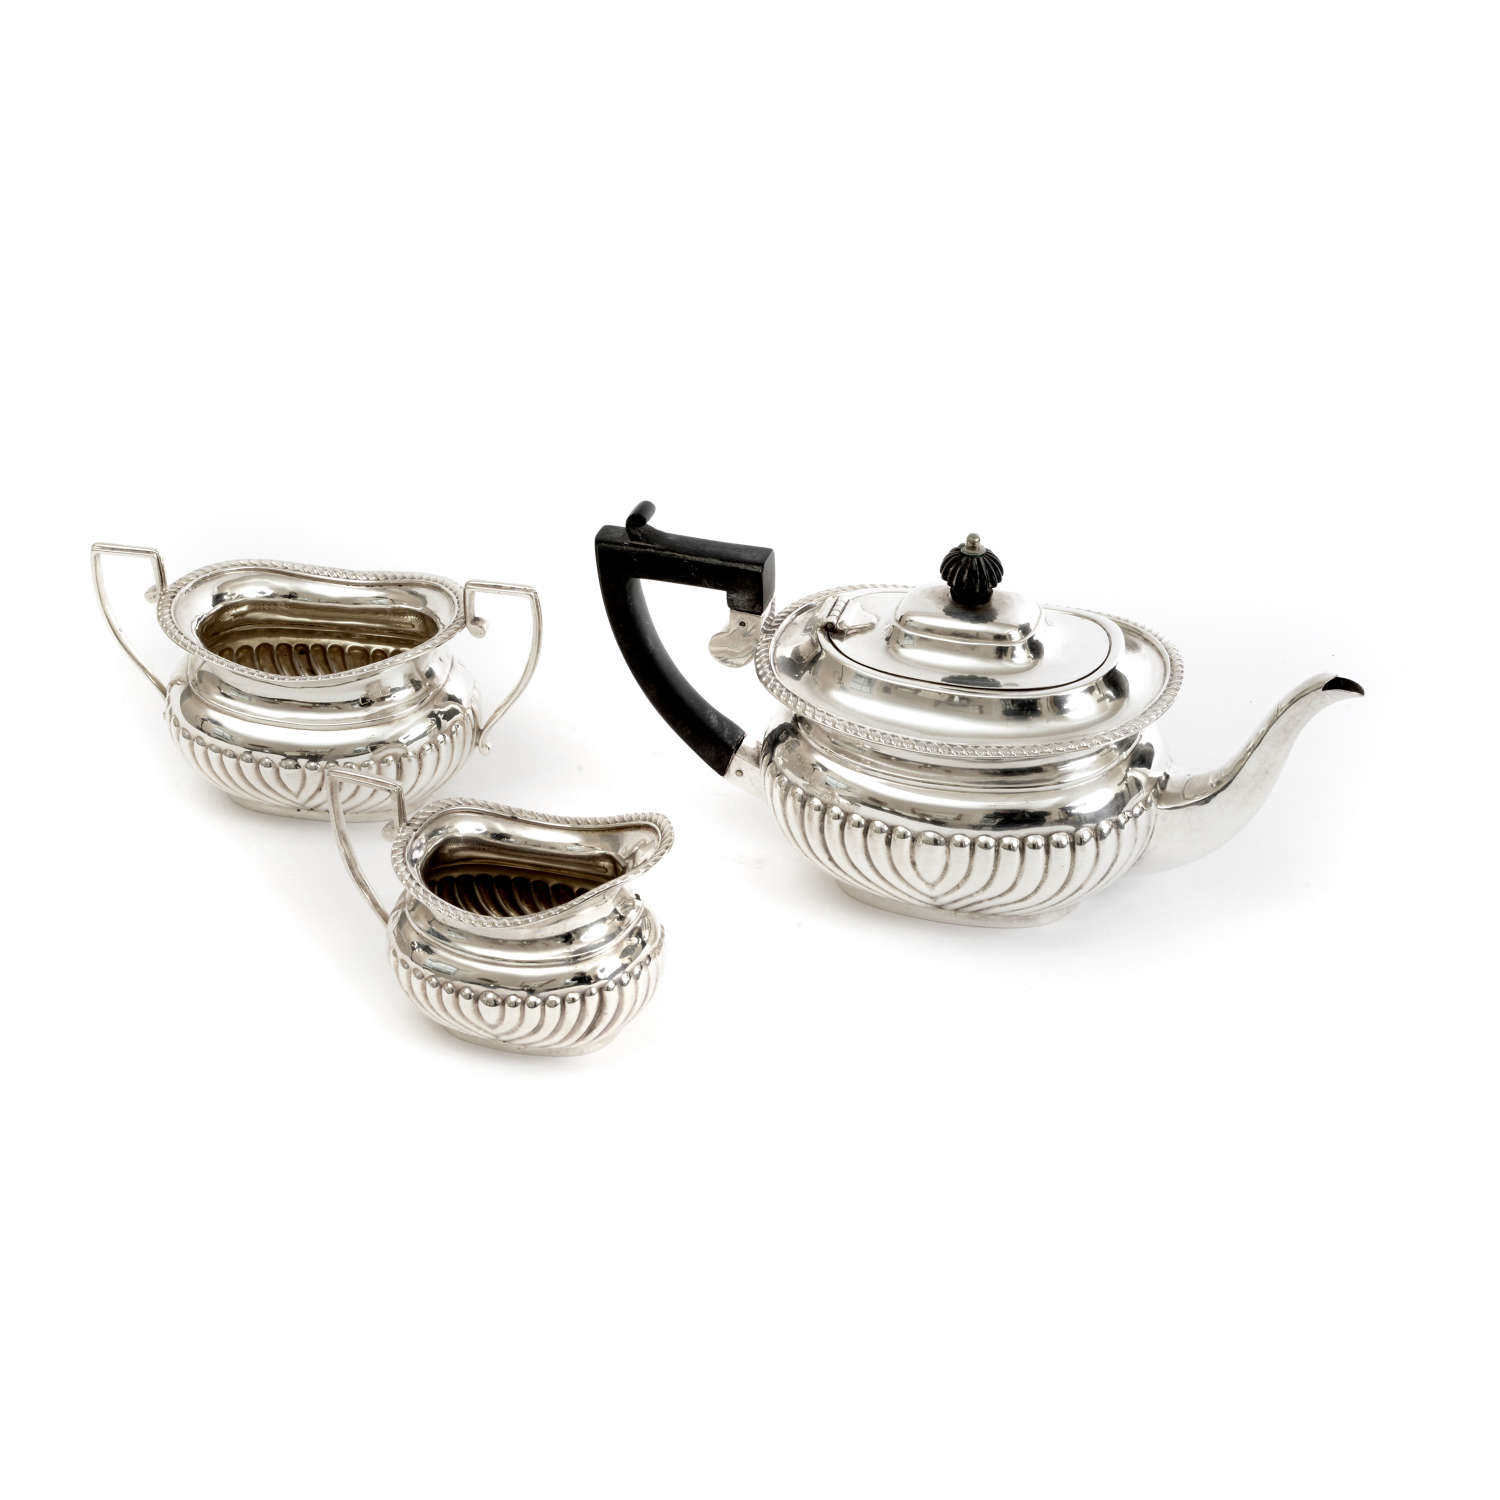 A Silver 3 Piece “Batchelor’s” Tea Service